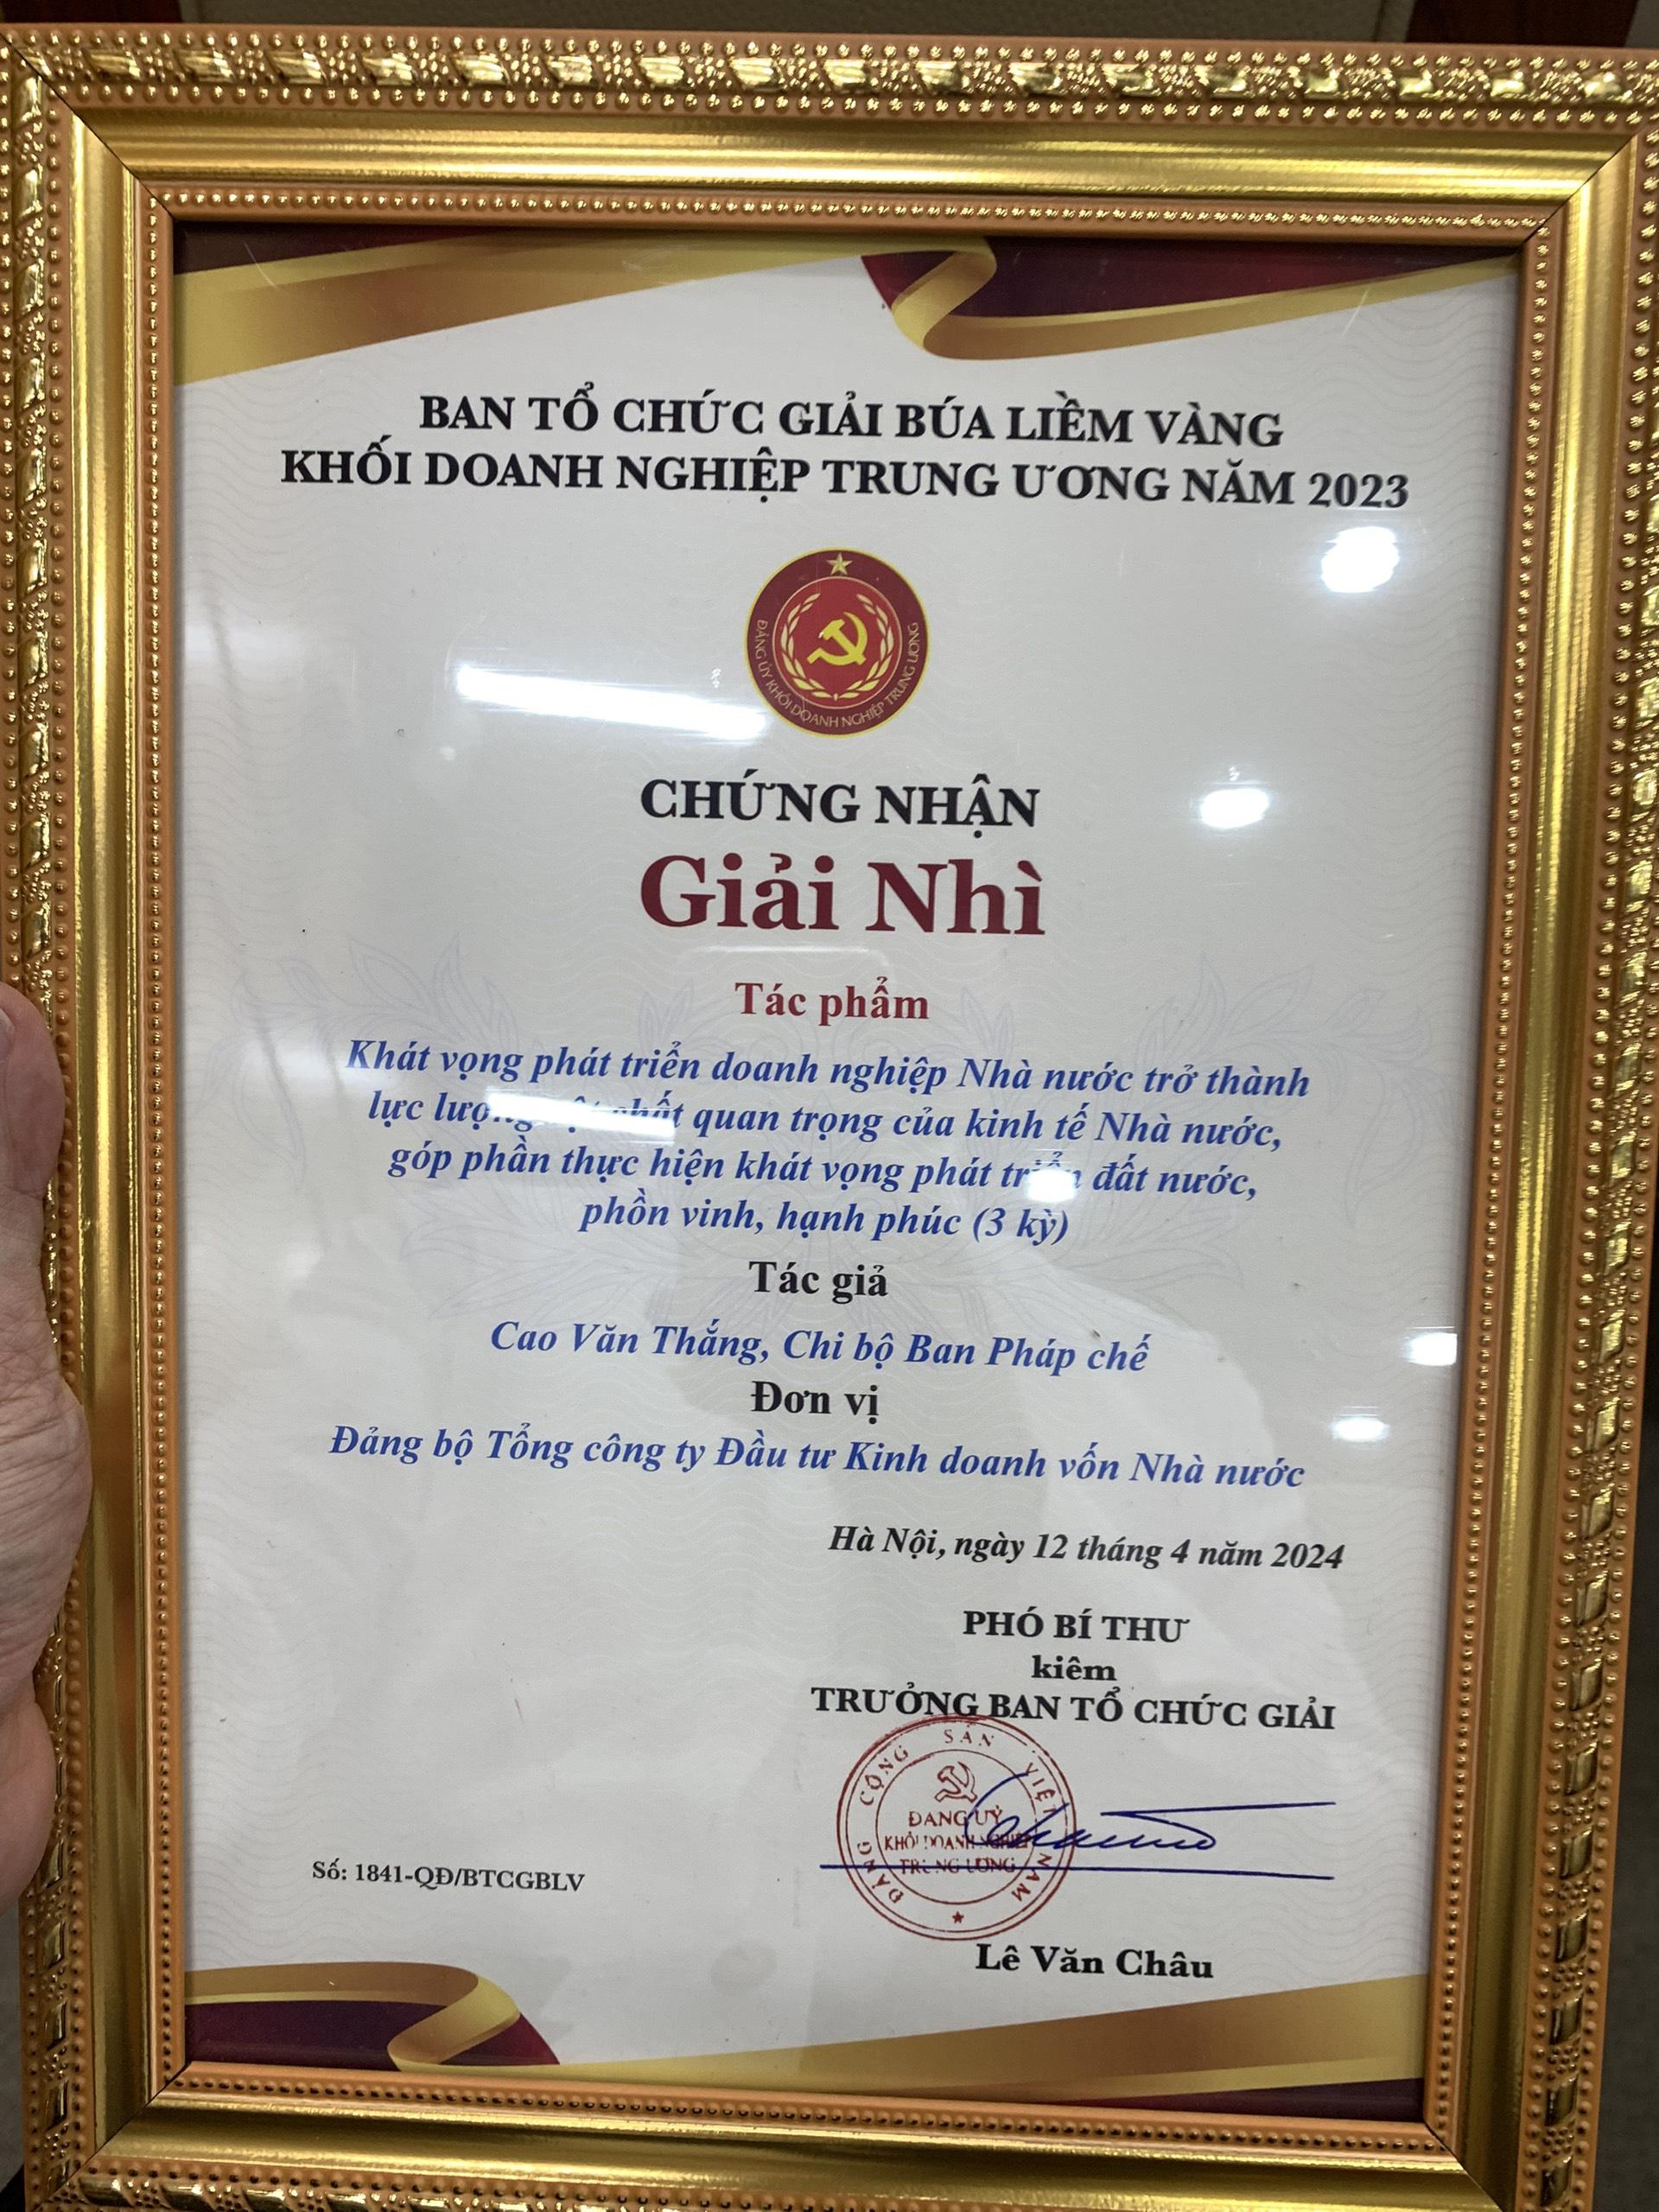 Chứng nhận giải Nhì của tác giả Cao Văn Thắng.